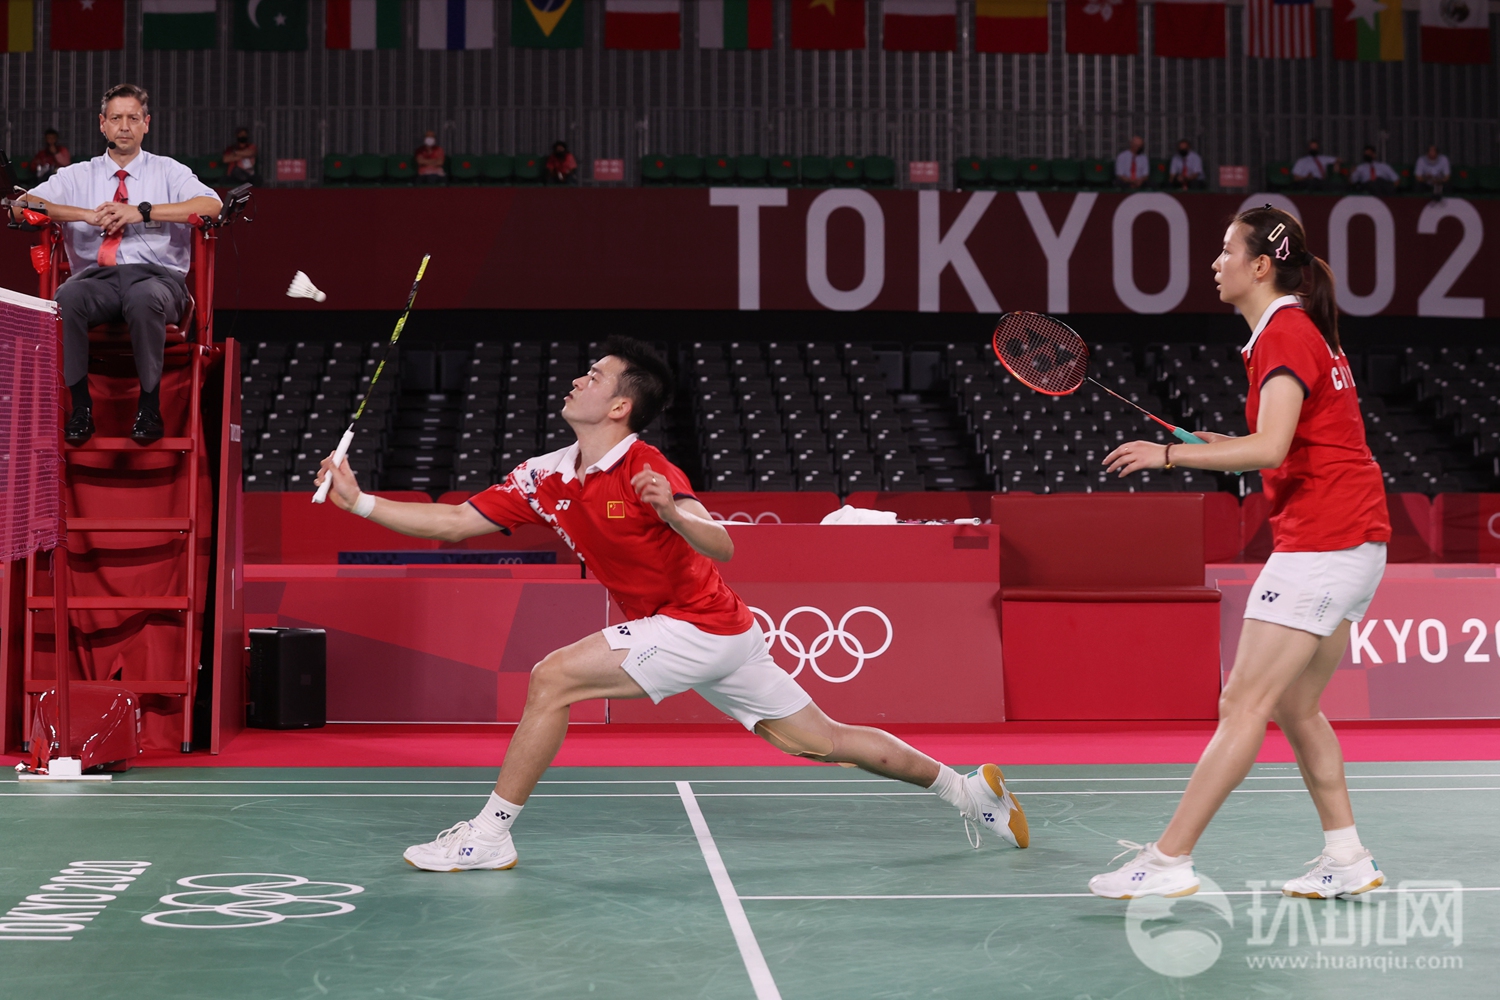 当地时间7月30日,在东京奥运会羽毛球混合双打决赛中,中国选手郑思维